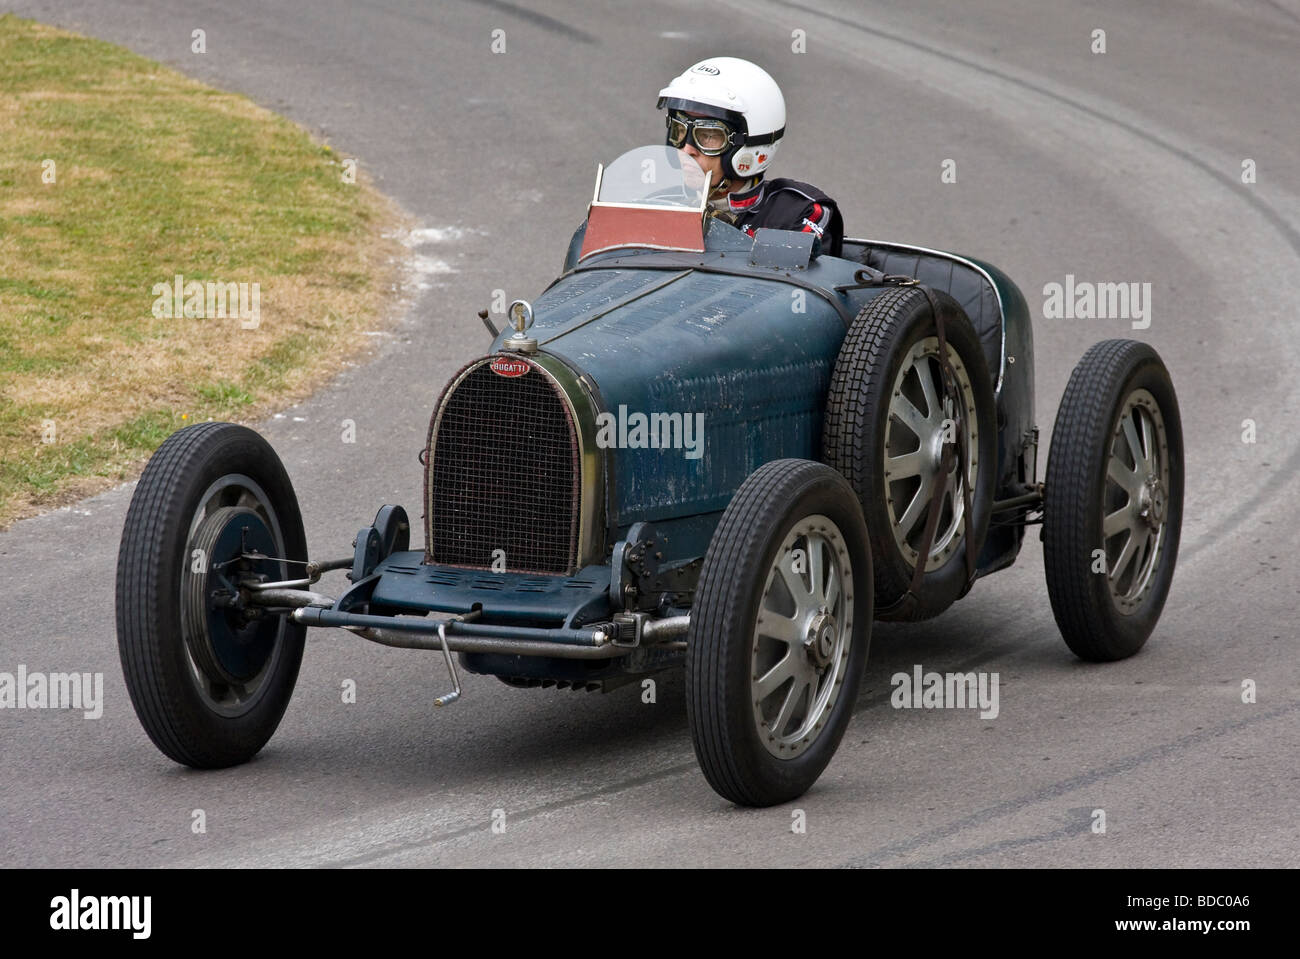 Bugatti Type 35 - Wikipedia